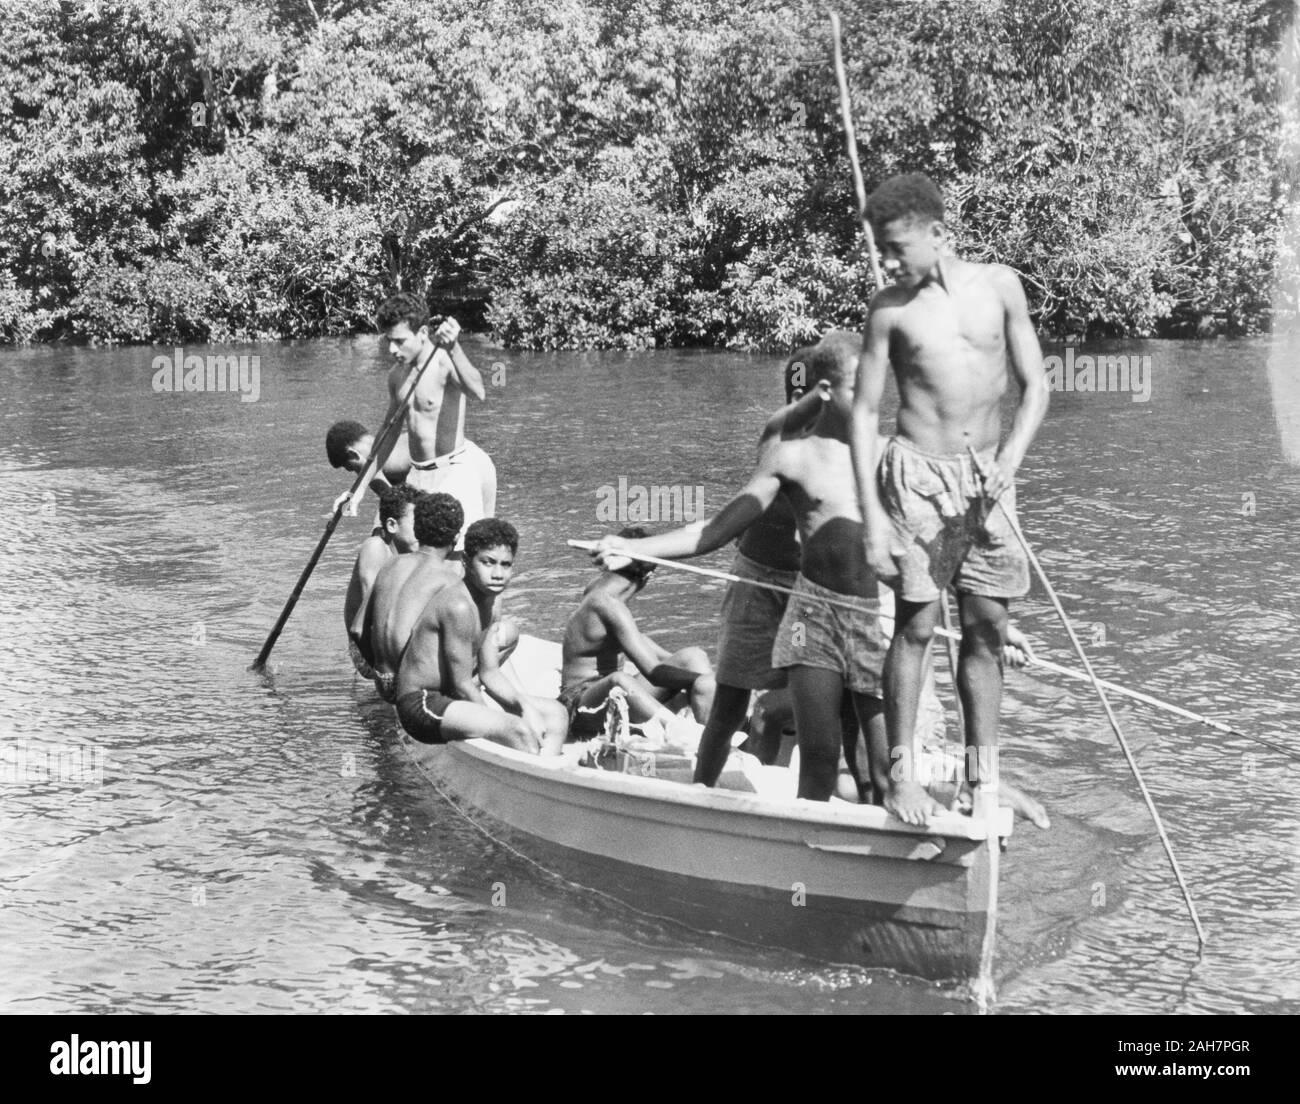 Fiji, i ragazzi in una canoa, FijiA gruppo di ragazzi in pantaloncini corti di rilassarsi al sole come un pilota in canoa lungo un fiume. La didascalia recita: Boys at play - Levuka - nell'isola di Ovalau, 1965. 2005/010/1/14/76. Foto Stock